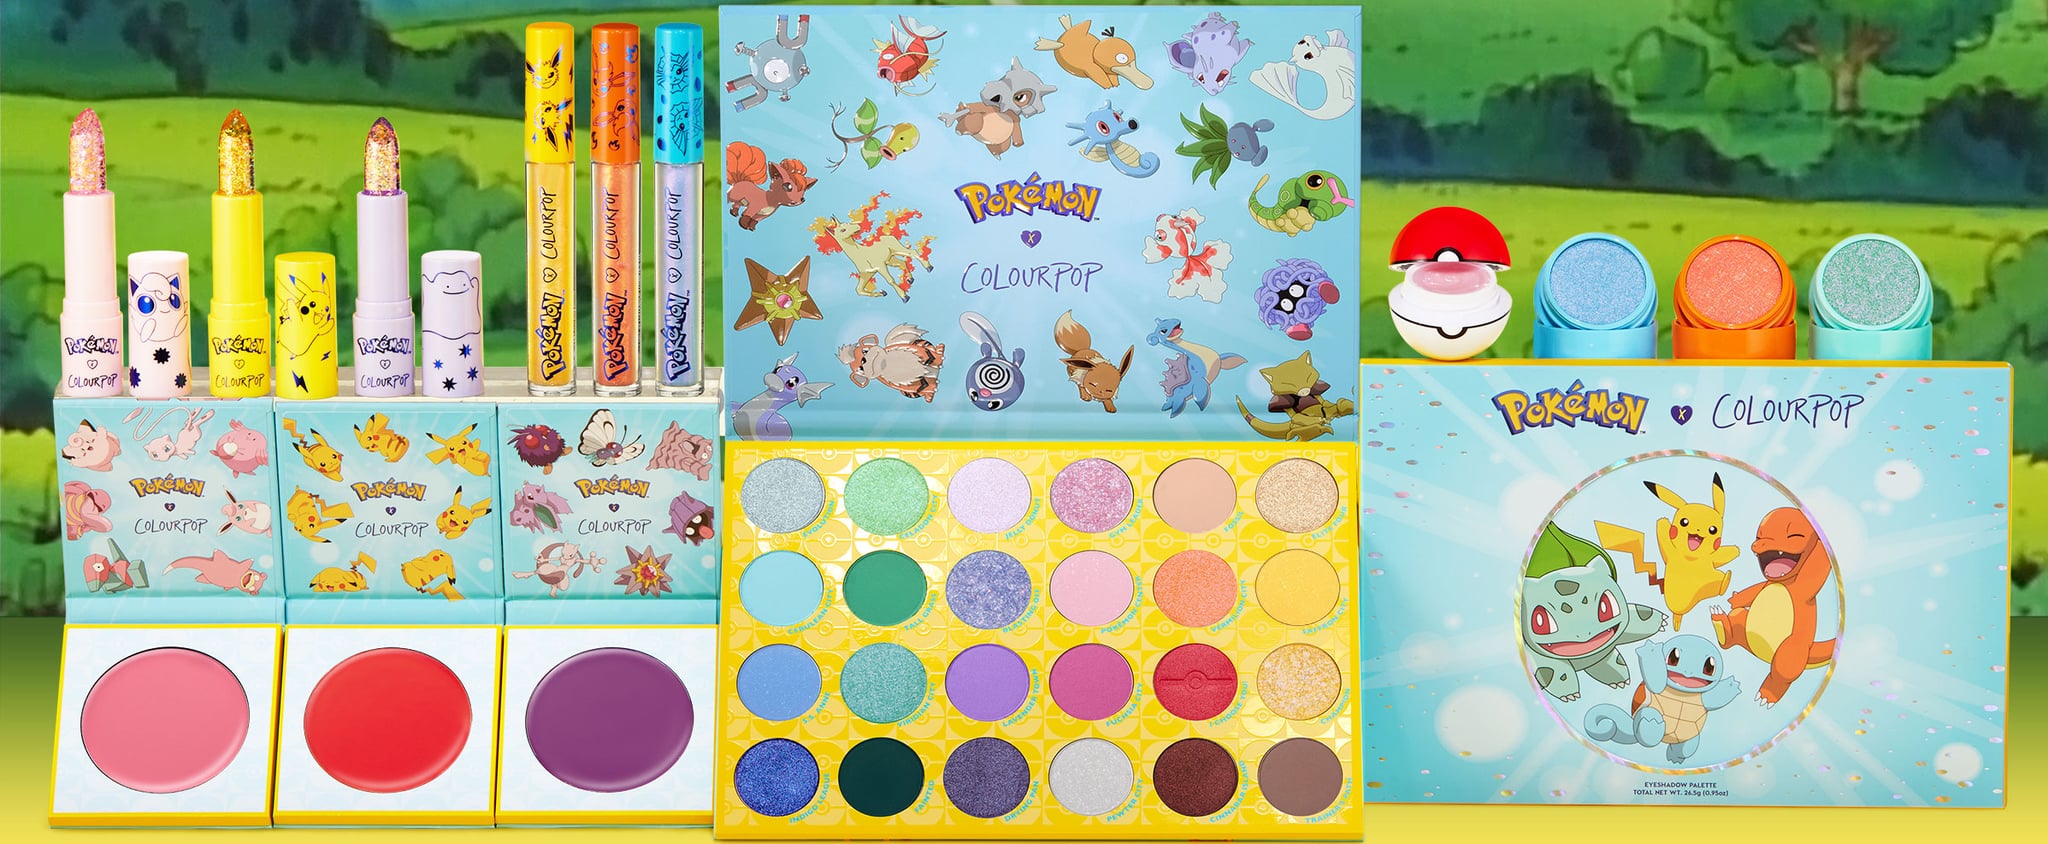 ColourPop "Pokémon" Collection Details